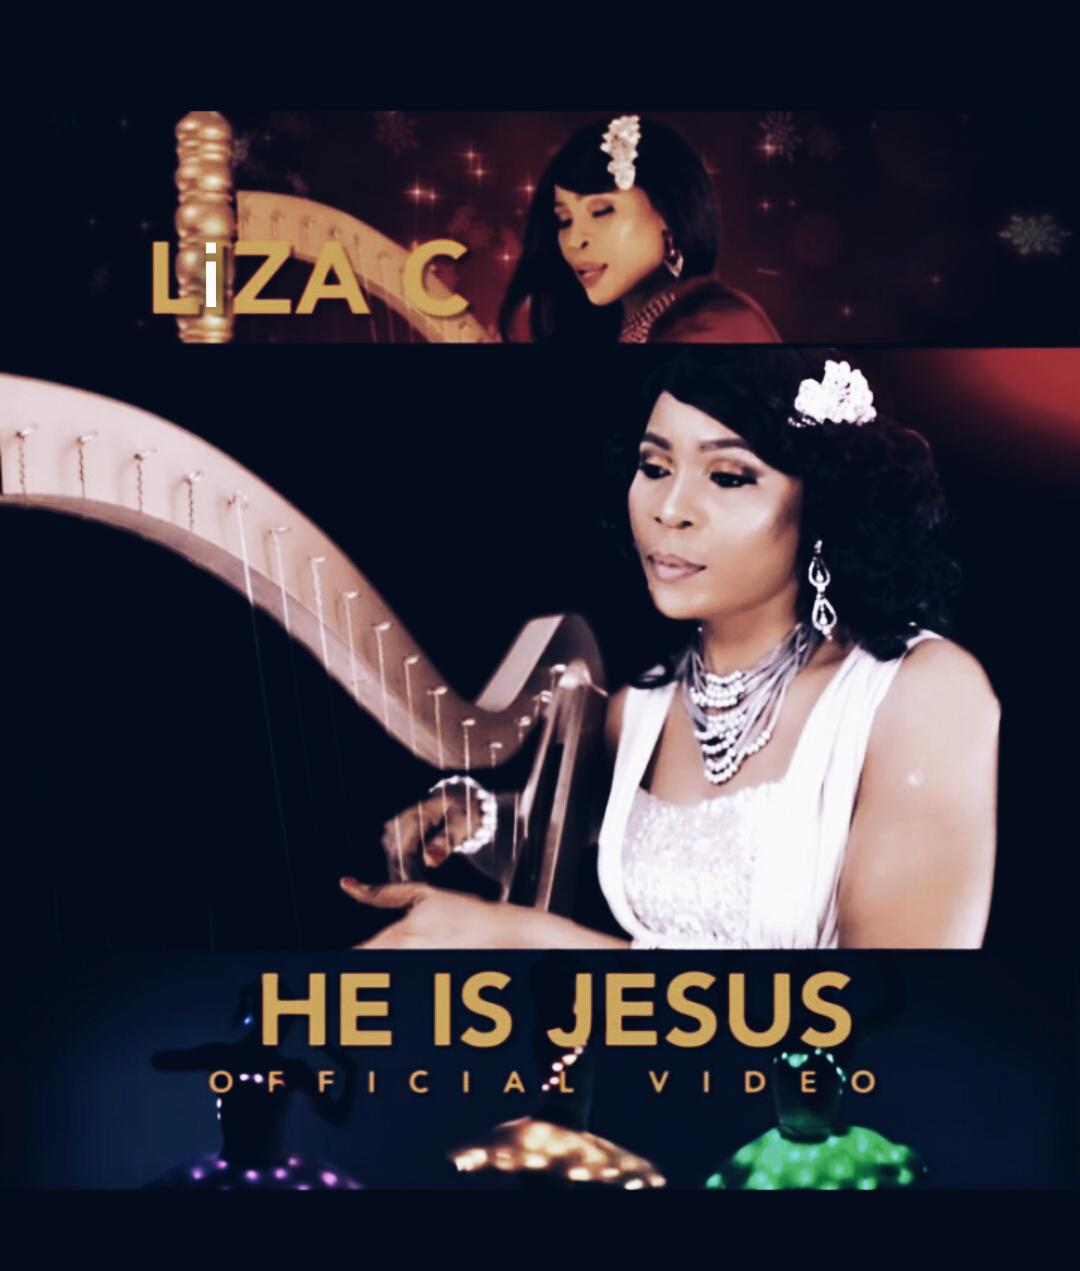 LizaC-He is Jesus art work - Woodclef